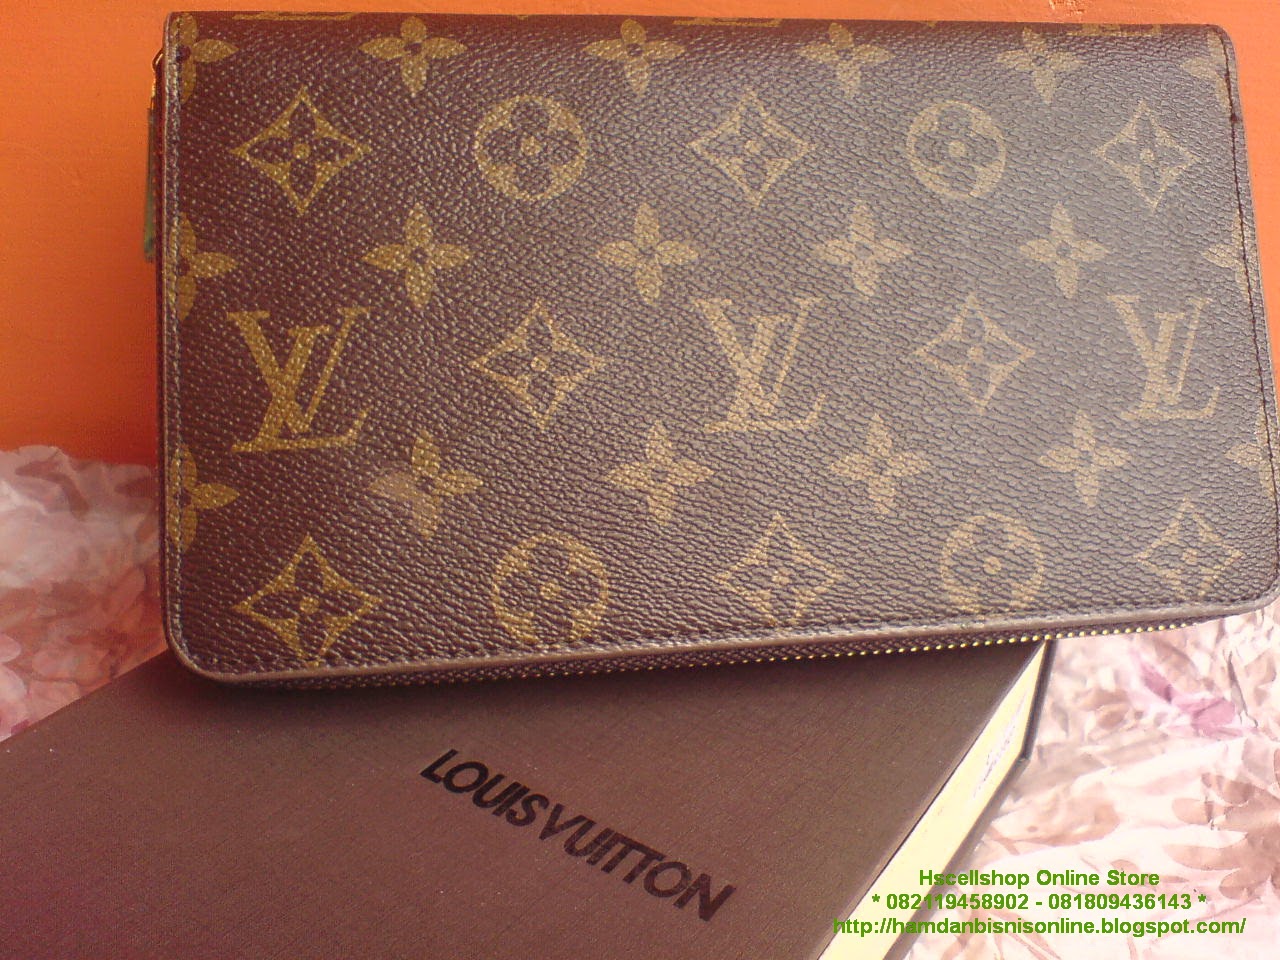 Dompet Louis Vuitton LV Import Kode DLV18 | hscellshop